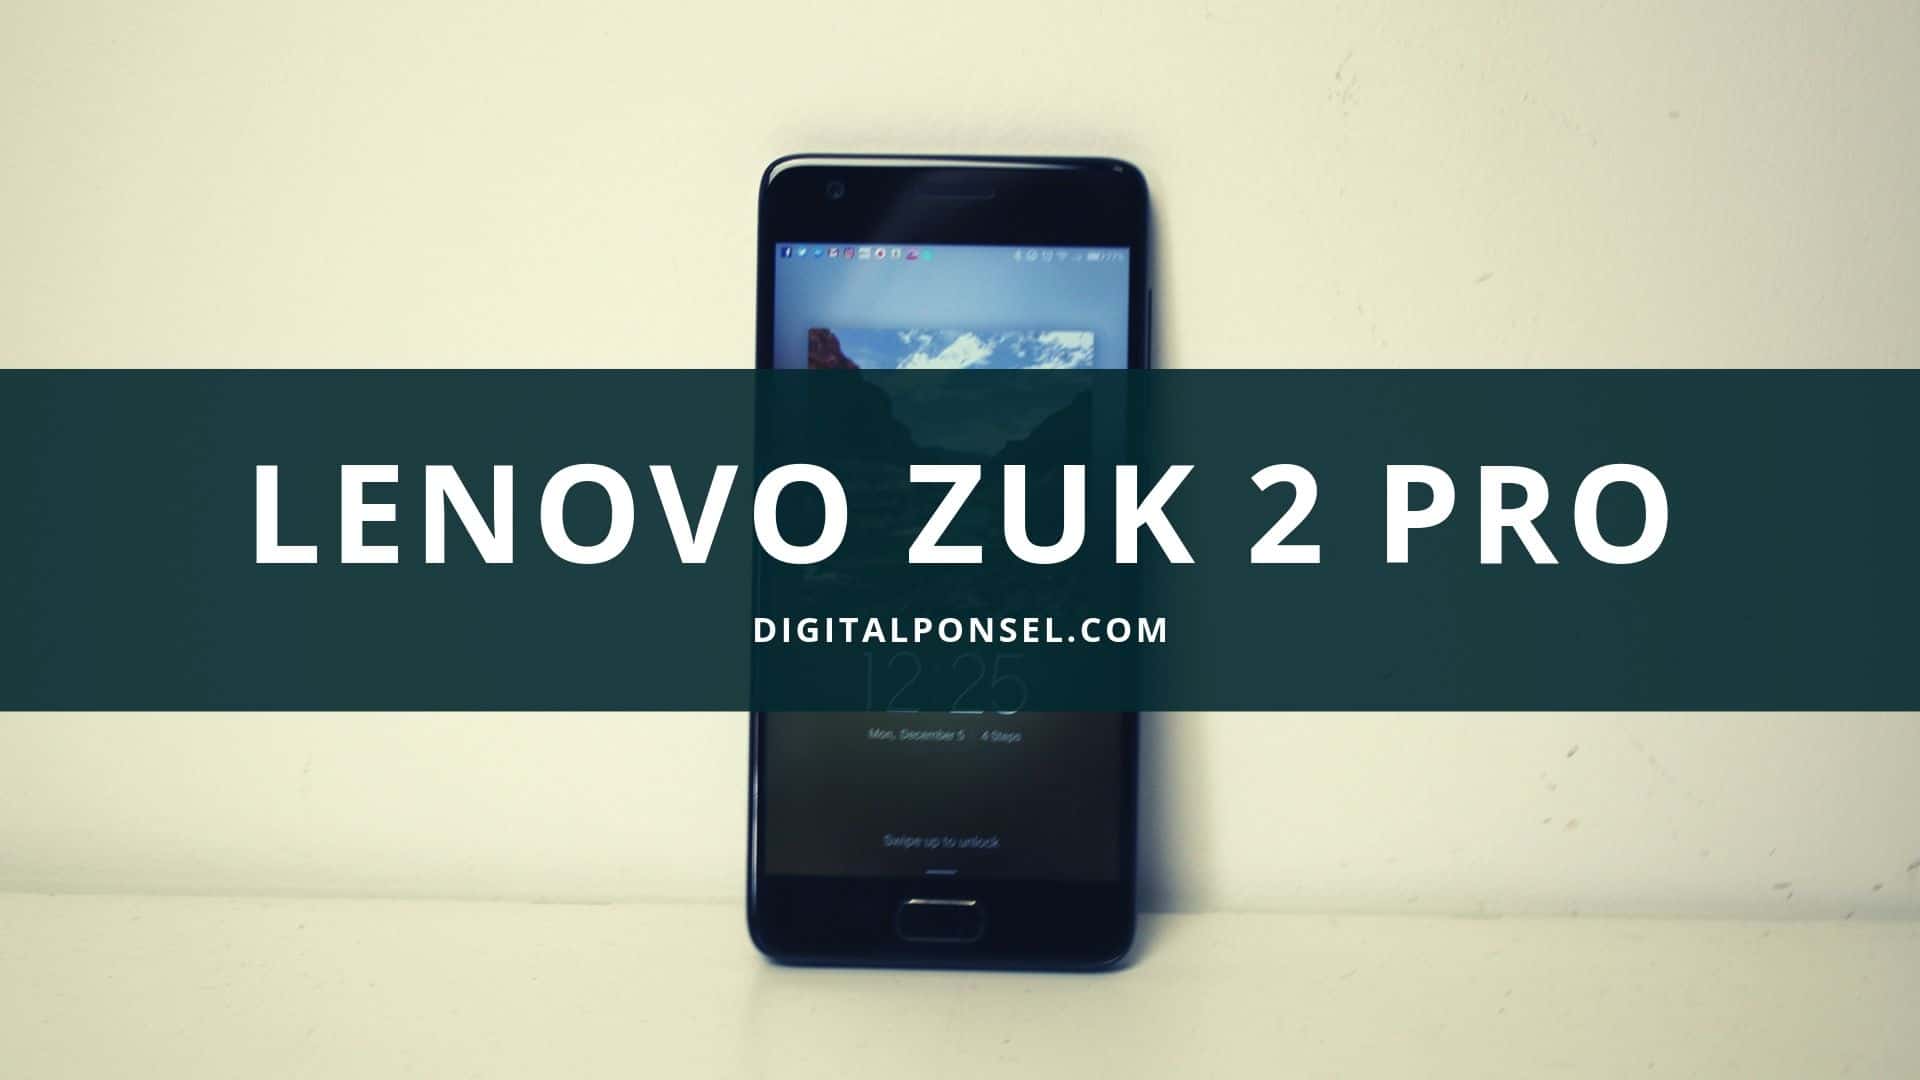 Lenovo Zuk 2 Pro